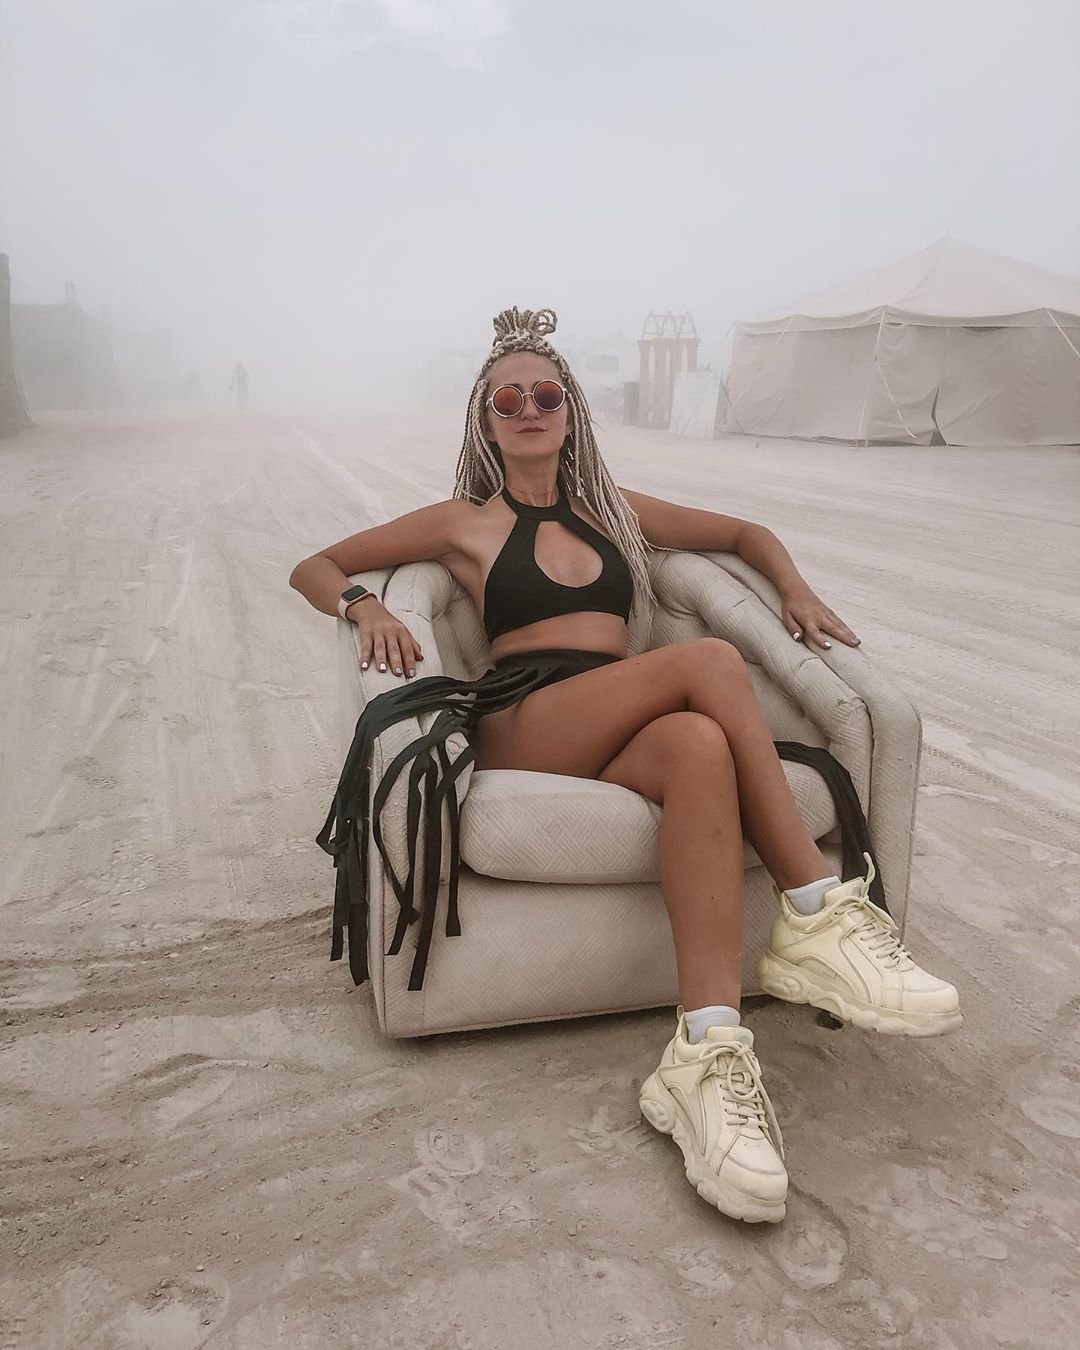 Нереальной красоты скульптуры и голые тела на фестивале Burning Man 2019 - фото 448419